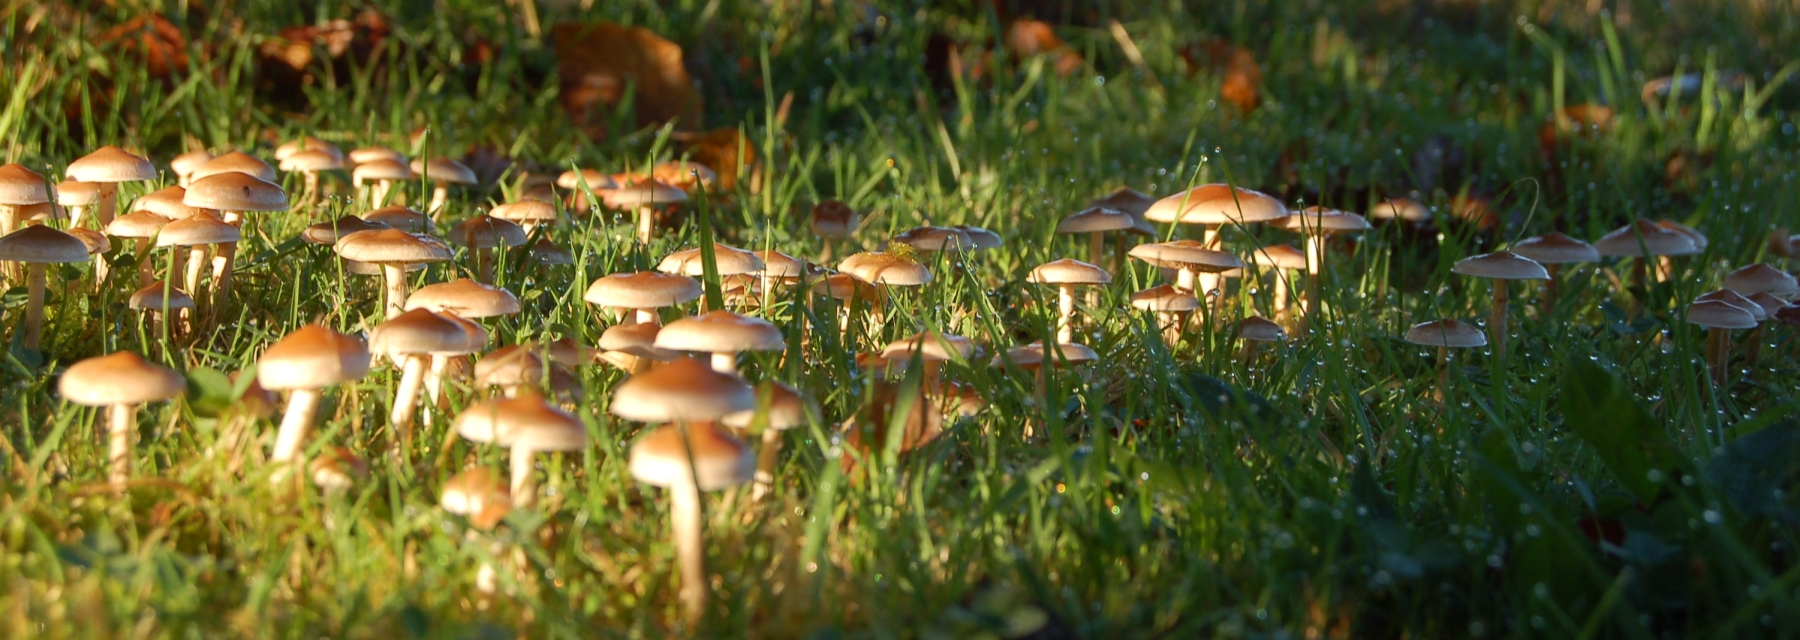 Field of mushrooms